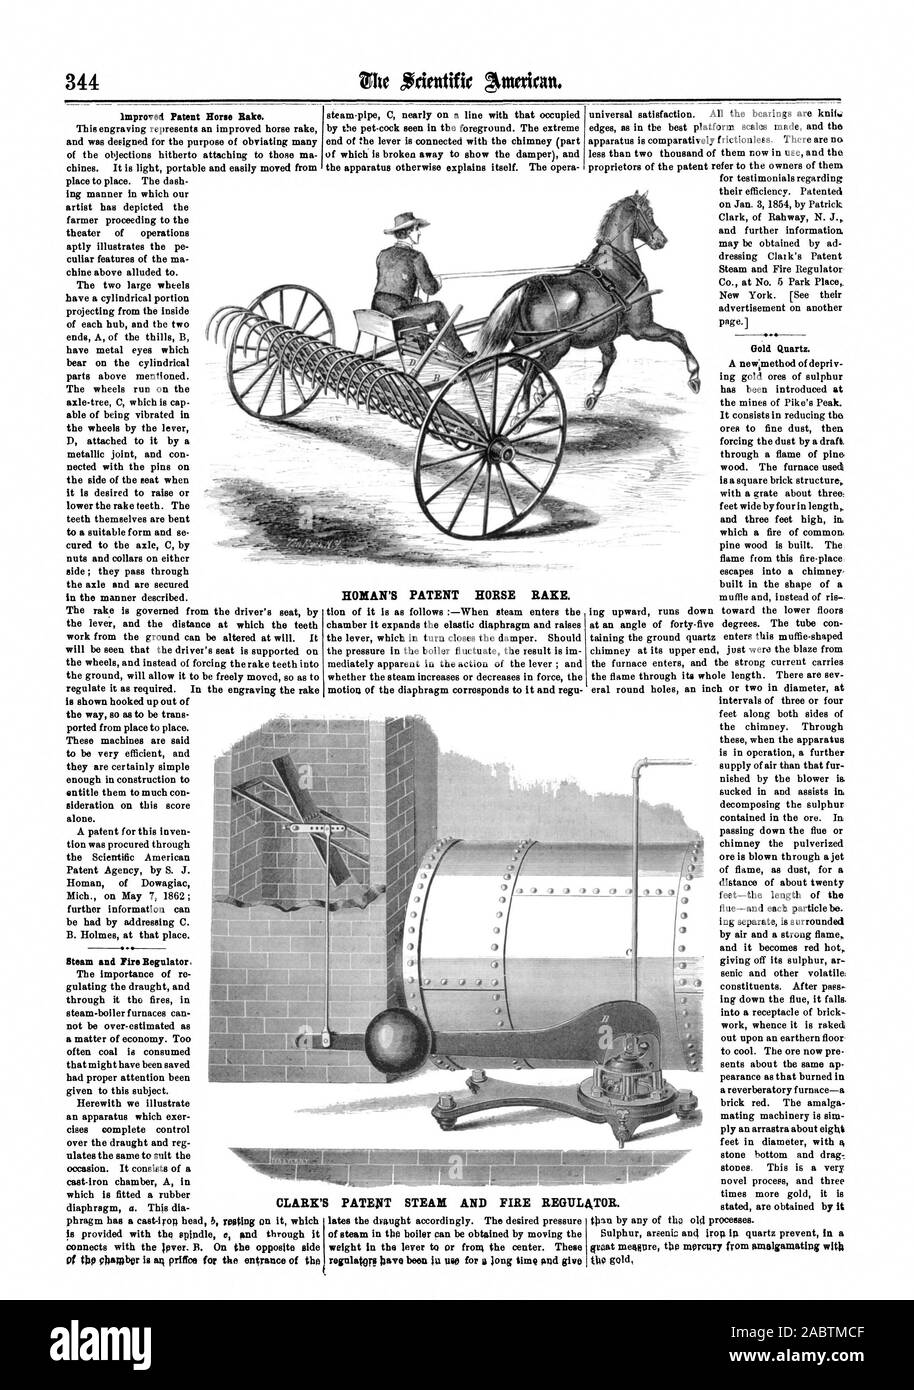 L'amélioration du cheval Brevet Rake. Régulateur de vapeur et d'incendie. Le brevet de Romain CHEVAL RAKE. meepre ertat le mercure provenant de la fusion avec l'or CLARK'S PATENT DE LA VAPEUR ET DE L'ORGANISME DE RÉGLEMENTATION. INCENDIE, Scientific American, 1863-05-30 Banque D'Images